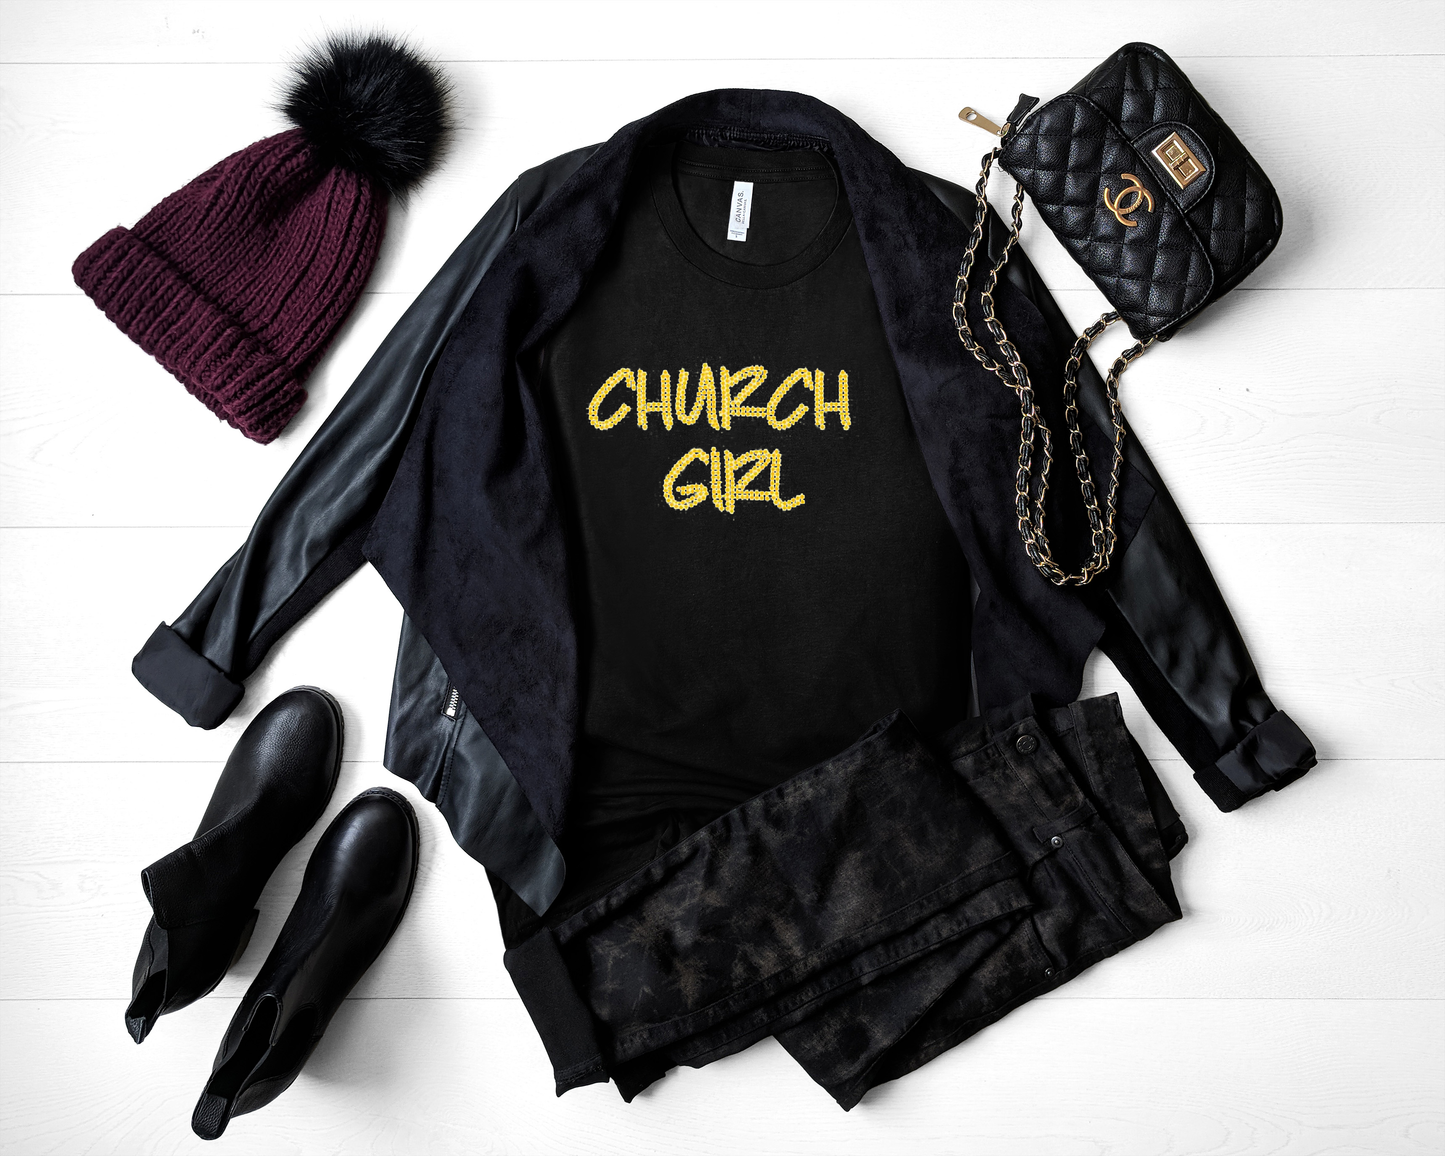 Church Girl